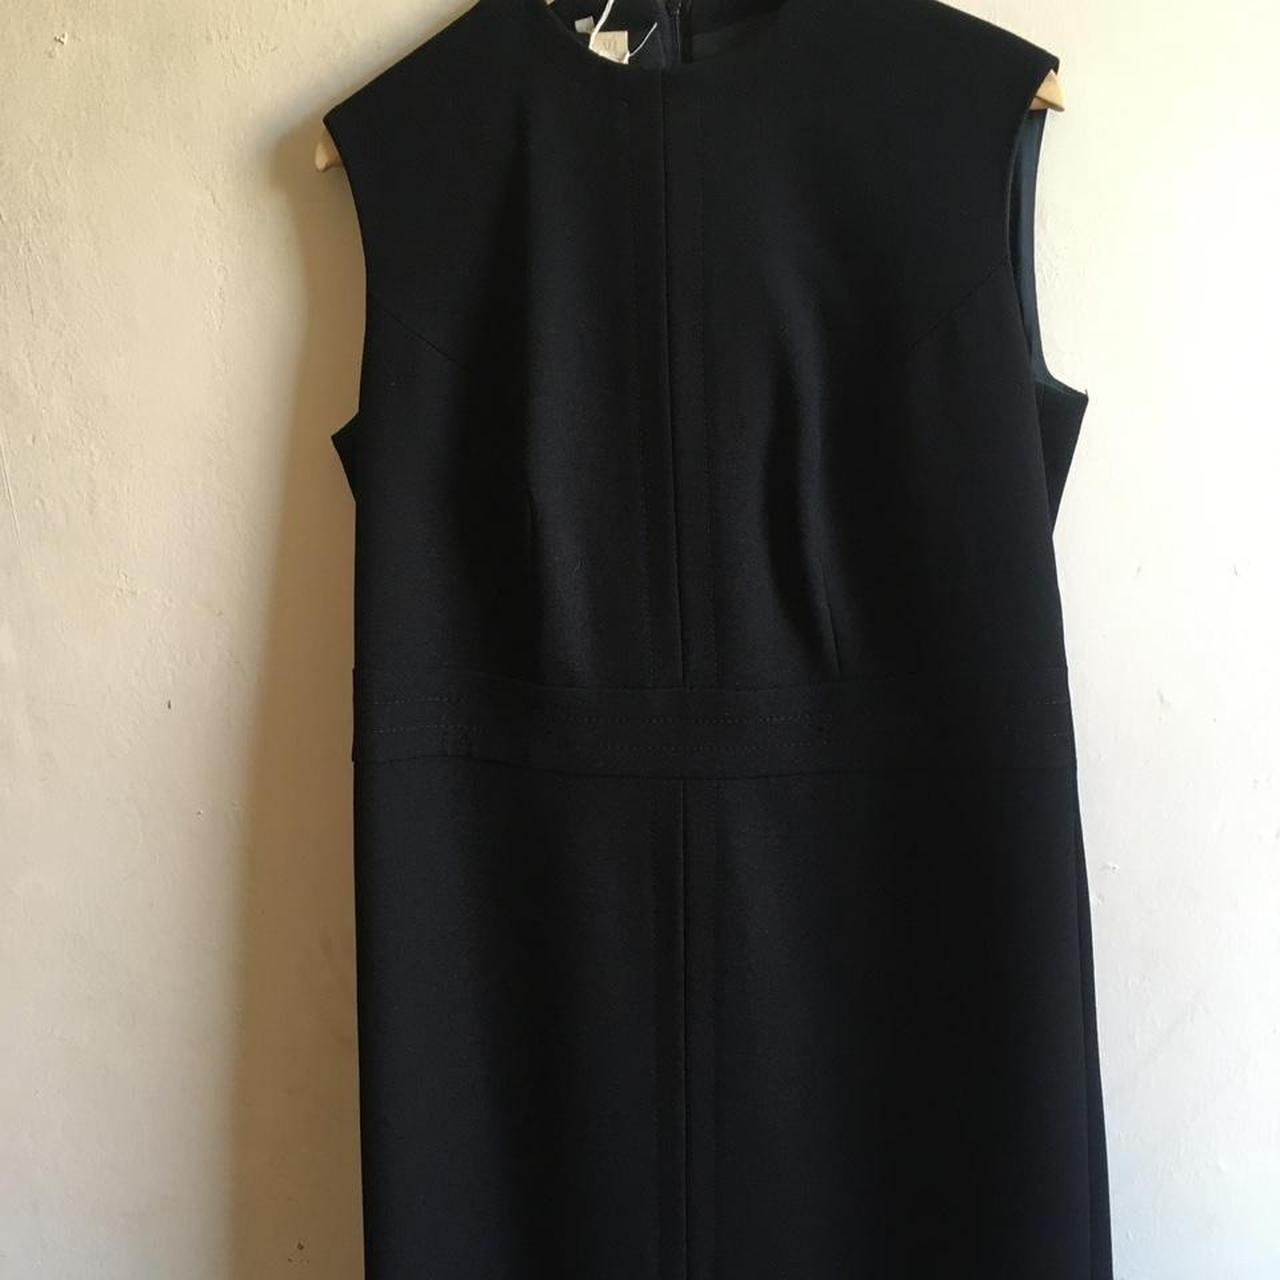 Vintage 1950s dress suit. Gorgeous black wool dress... - Depop